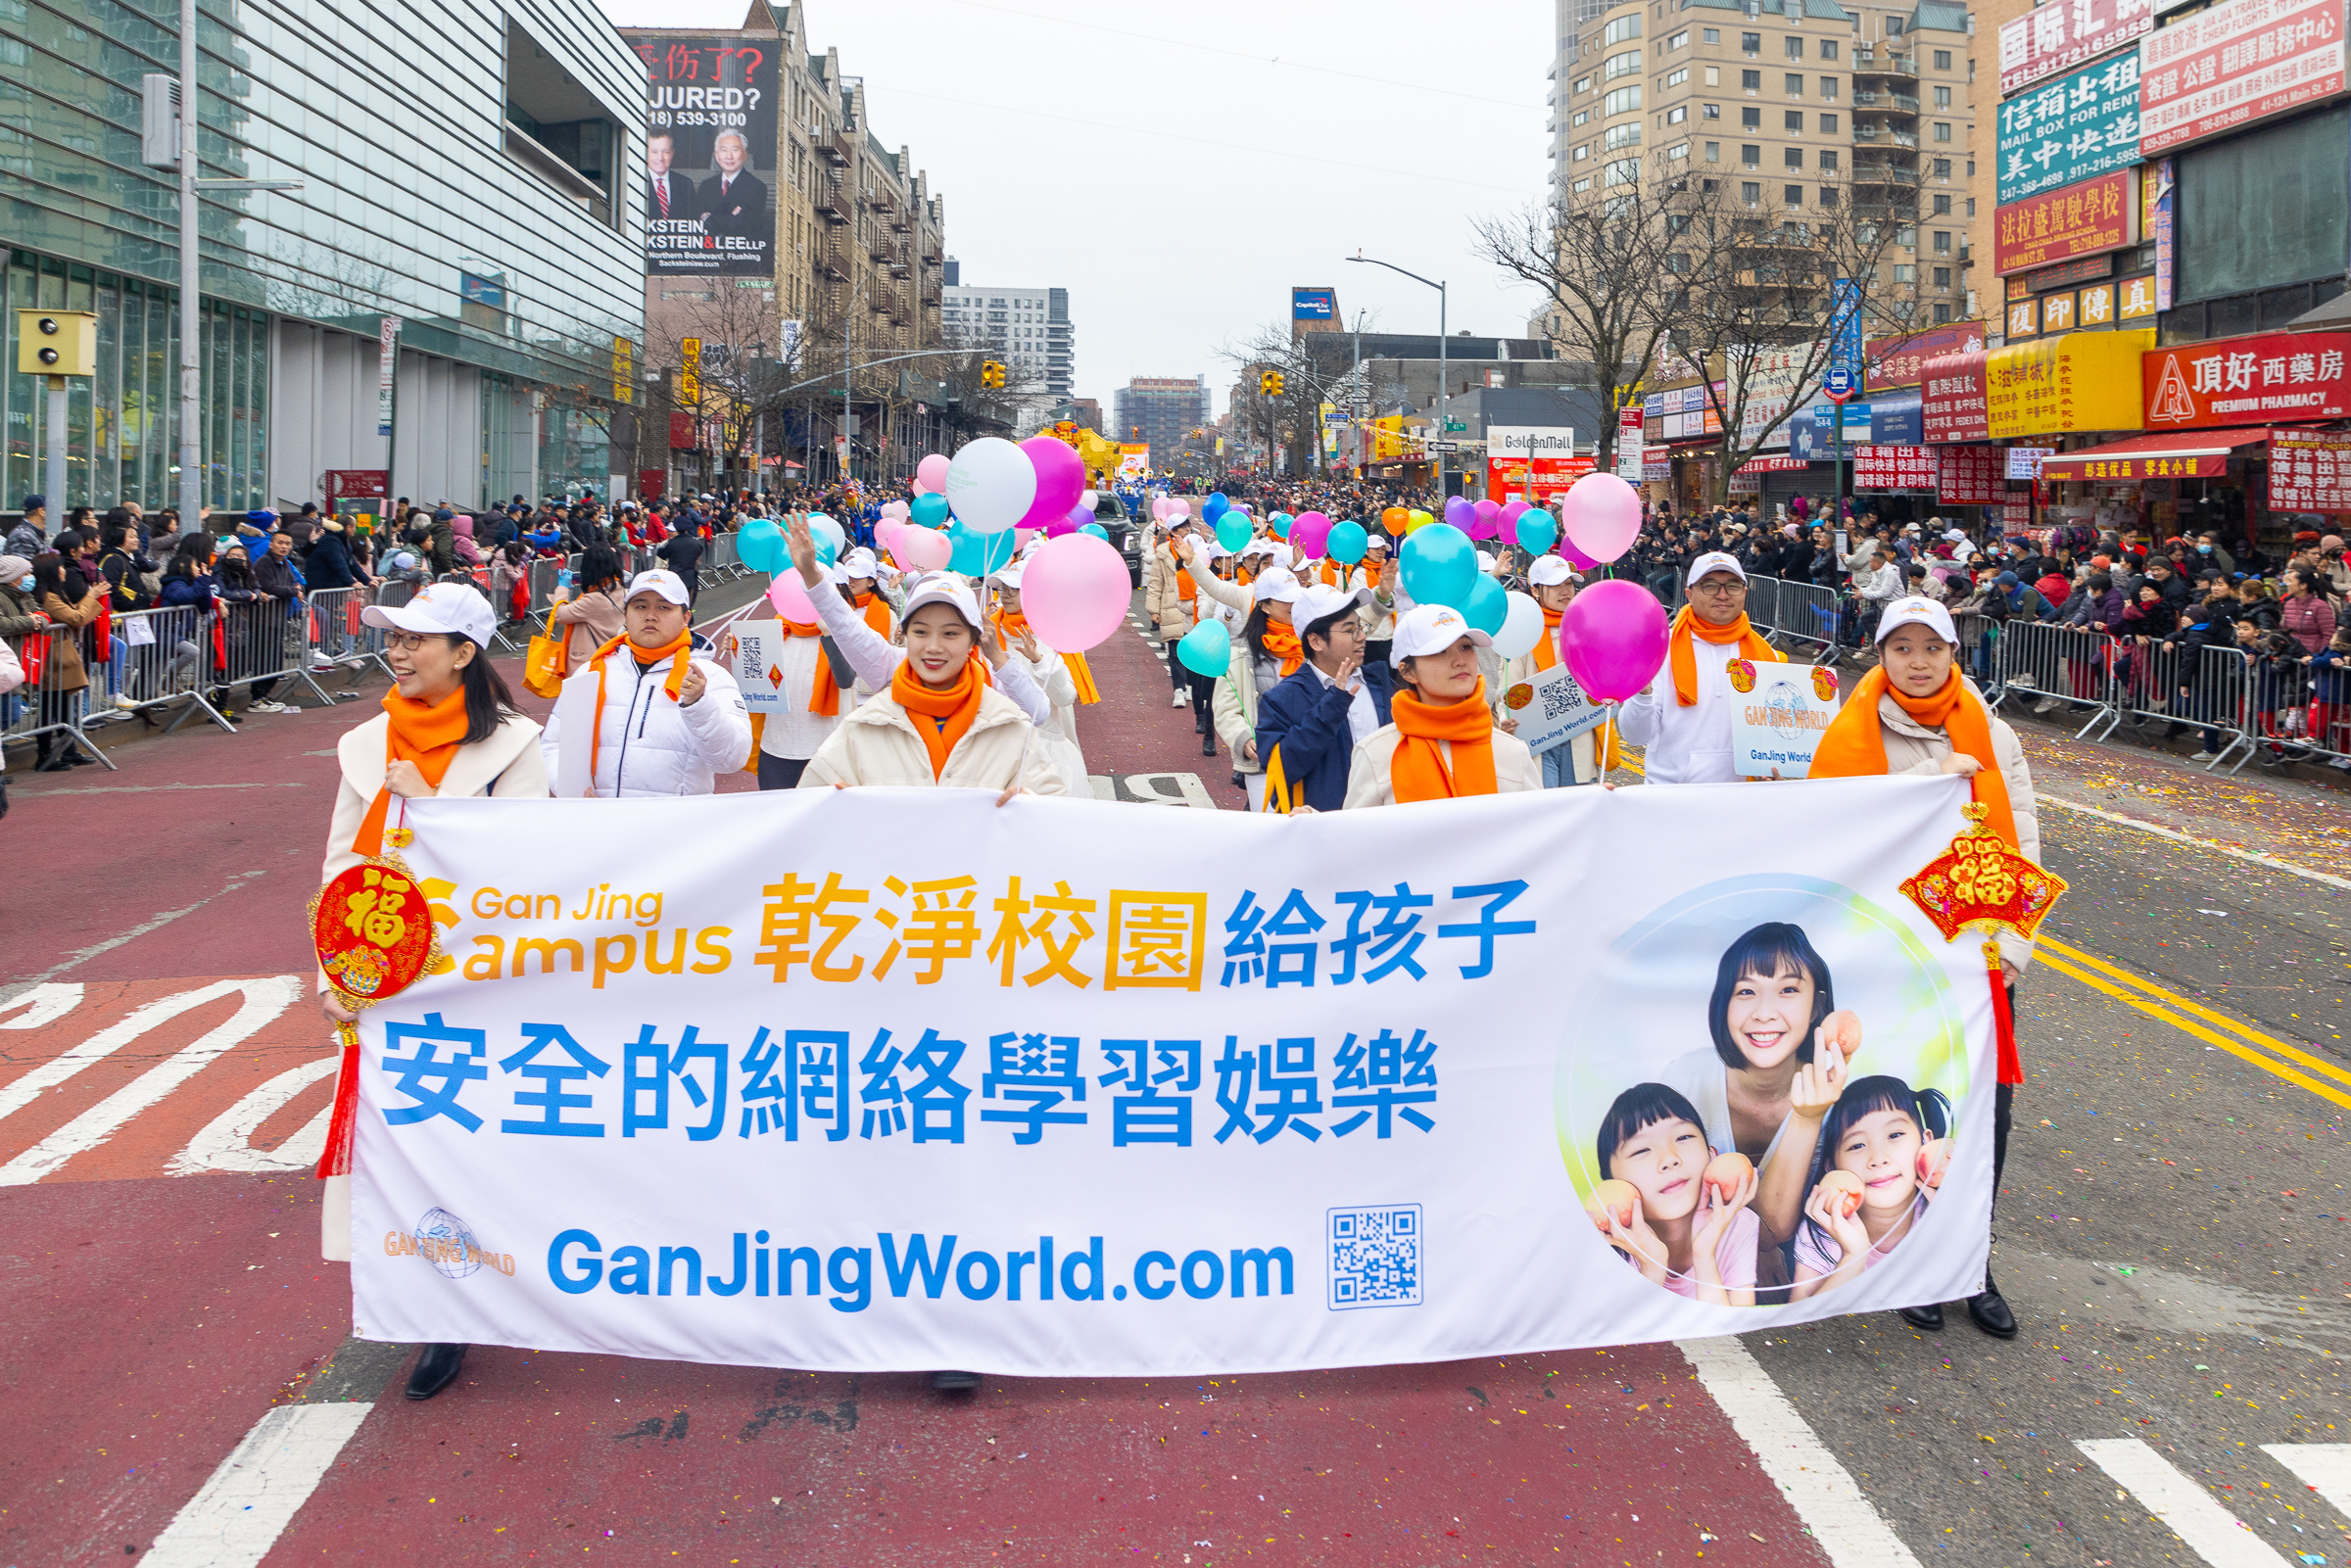 Đoàn “Gan Jing Campus” của Gan Jing World đã tham gia Lễ diễn hành Tết Nguyên Đán ở Flushing, New York, để chúc mừng năm mới. (Ảnh: Mark Zou/Epoch Times)